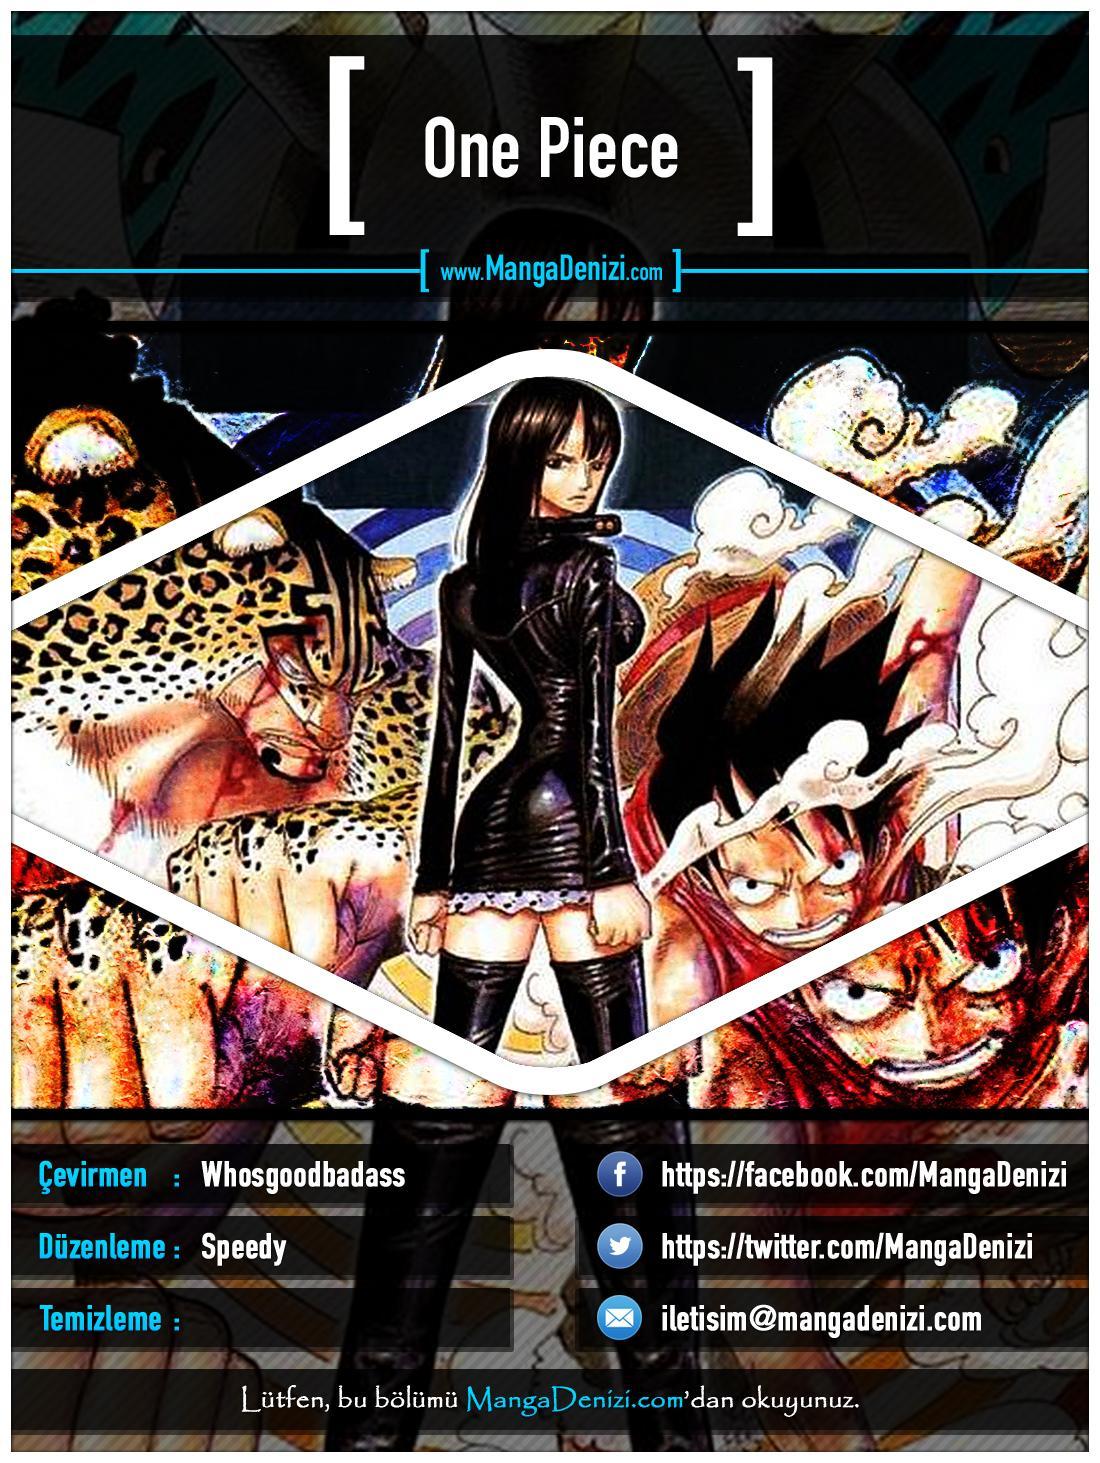 One Piece [Renkli] mangasının 0355 bölümünün 1. sayfasını okuyorsunuz.